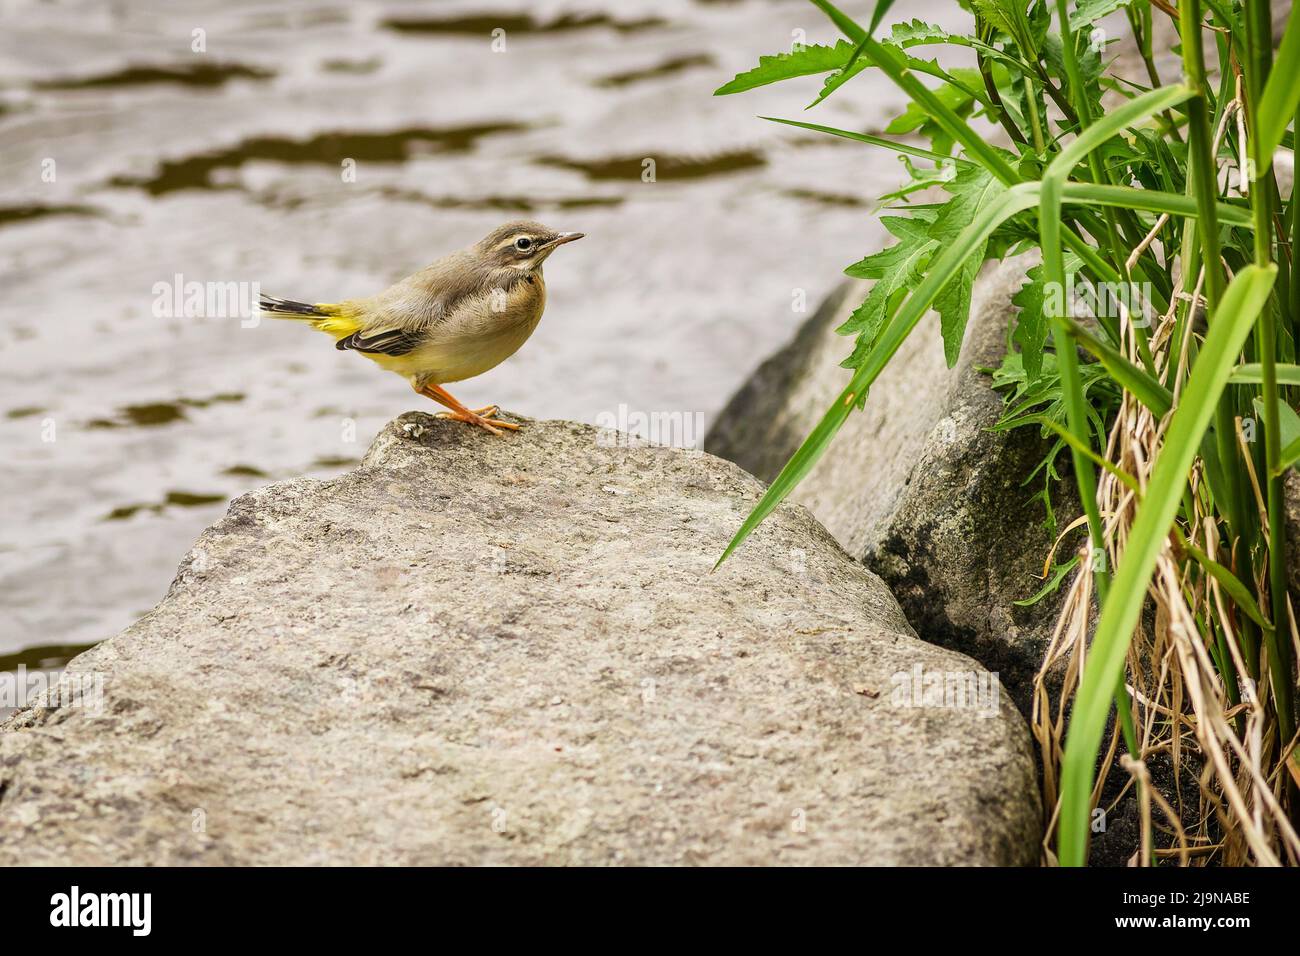 Ein junger Vogel, die graue Bachstelze, auf einem grauen Stein am Fluss. Wasser im Hintergrund. Grünes Gras wächst am Ufer. Stockfoto